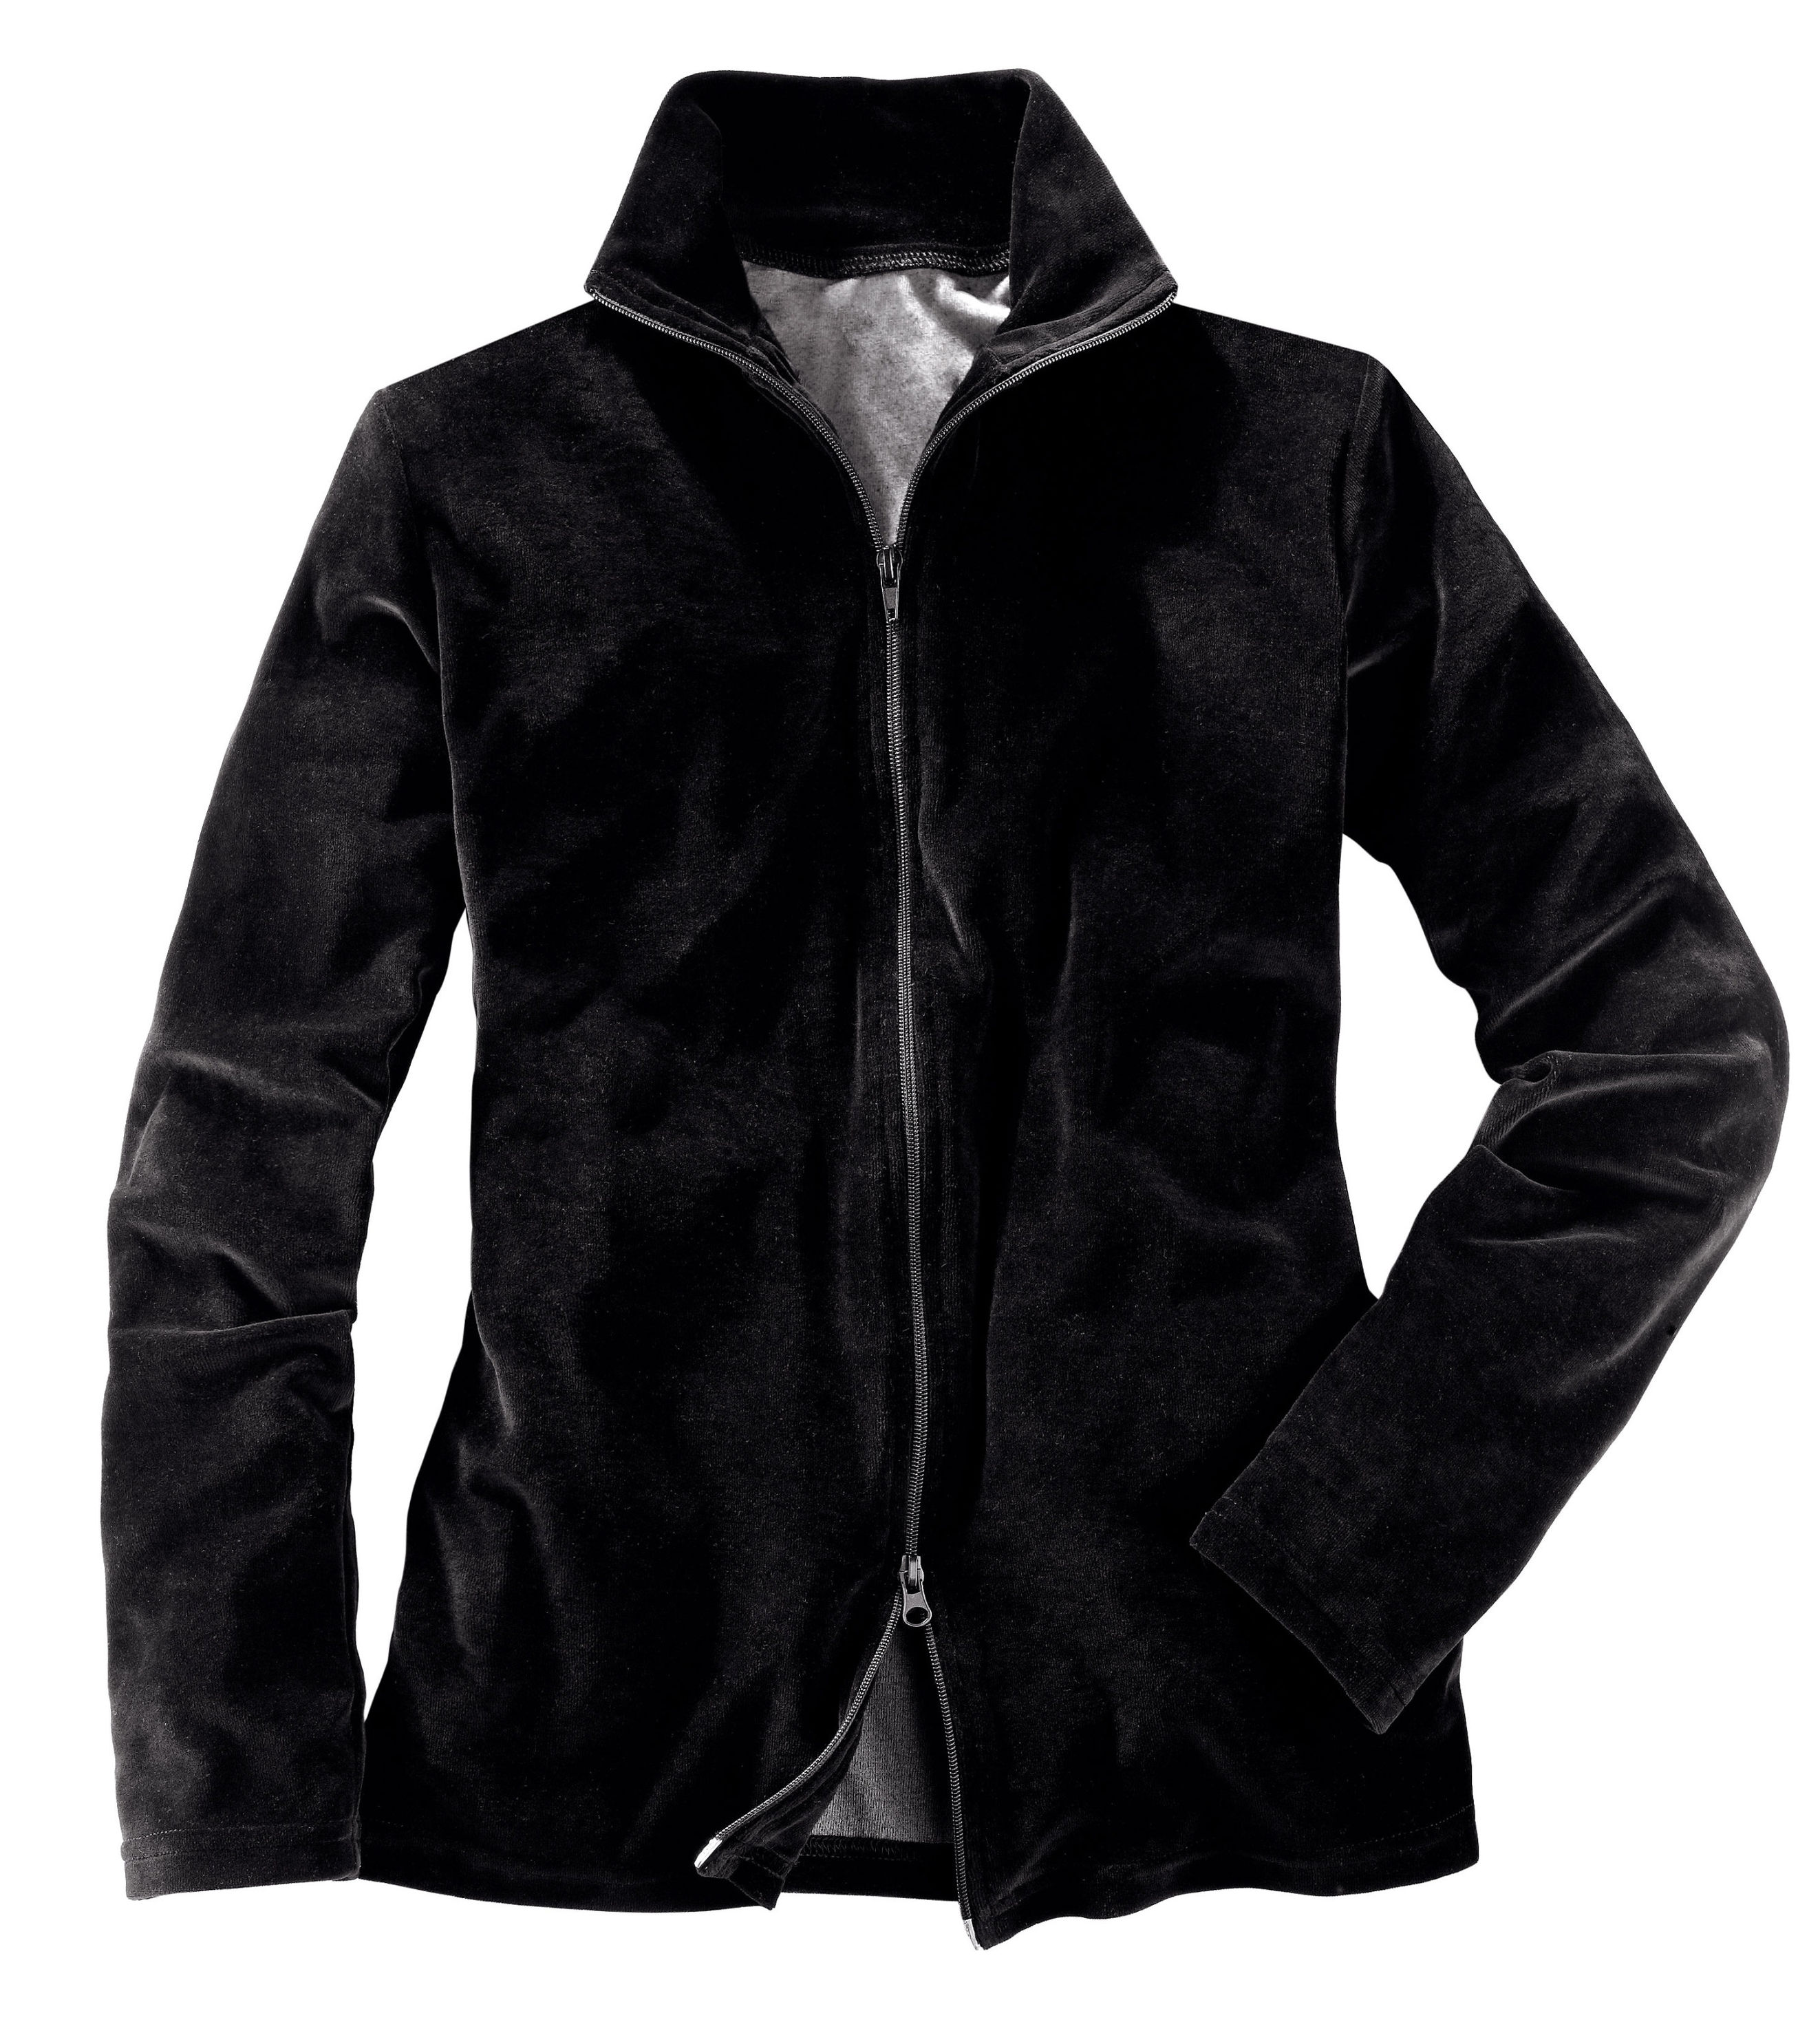 Damen-Nicki-Jacke, schwarz Größe: XL bestellen | Weltbild.de